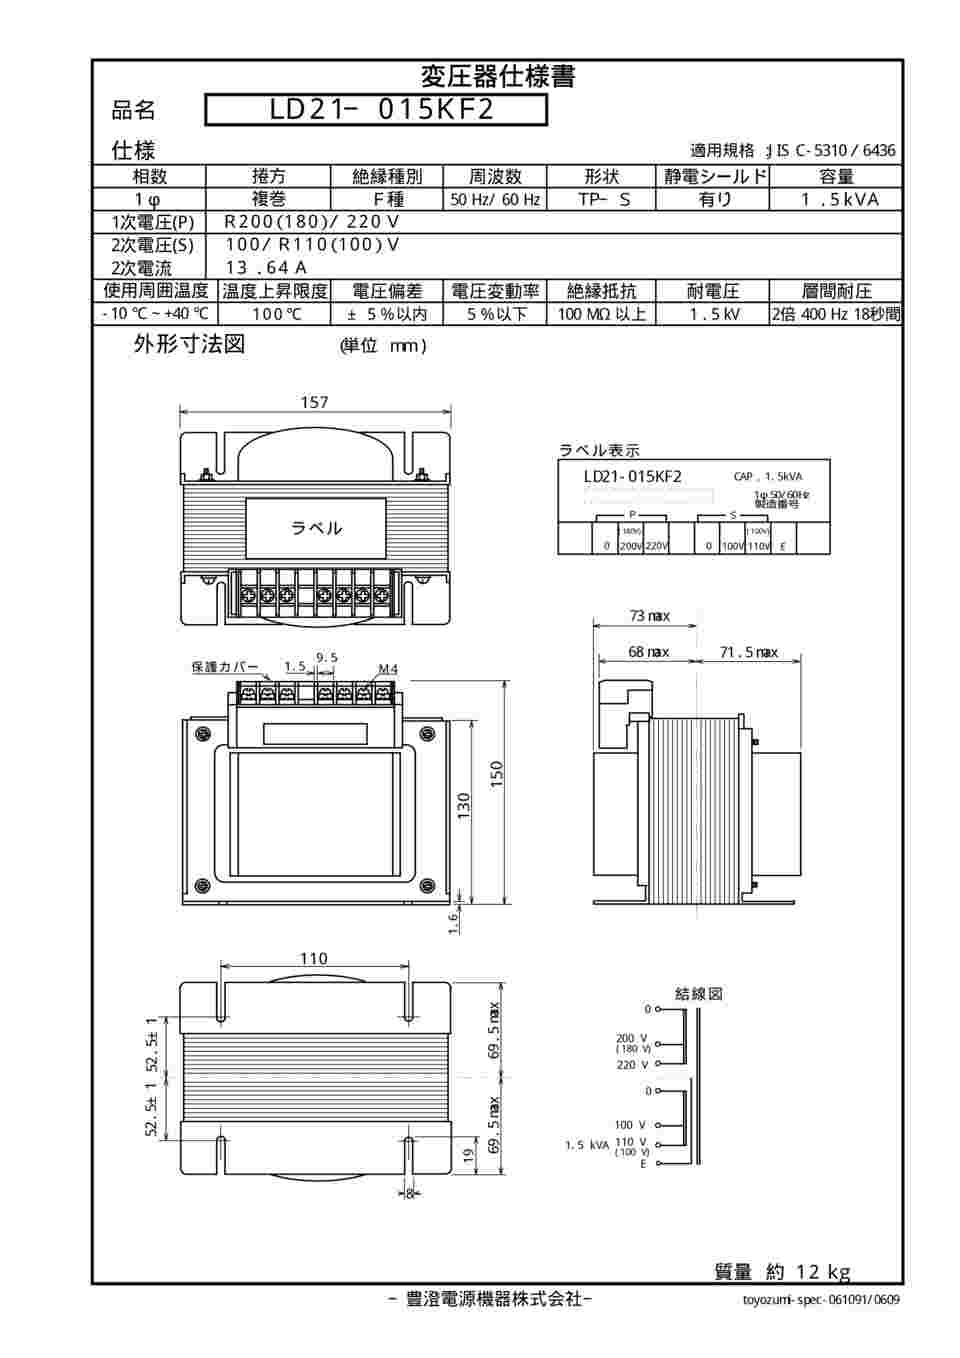 64-4331-25 電源 トランス LDシリーズ LD21-015KF2 【AXEL】 アズワン